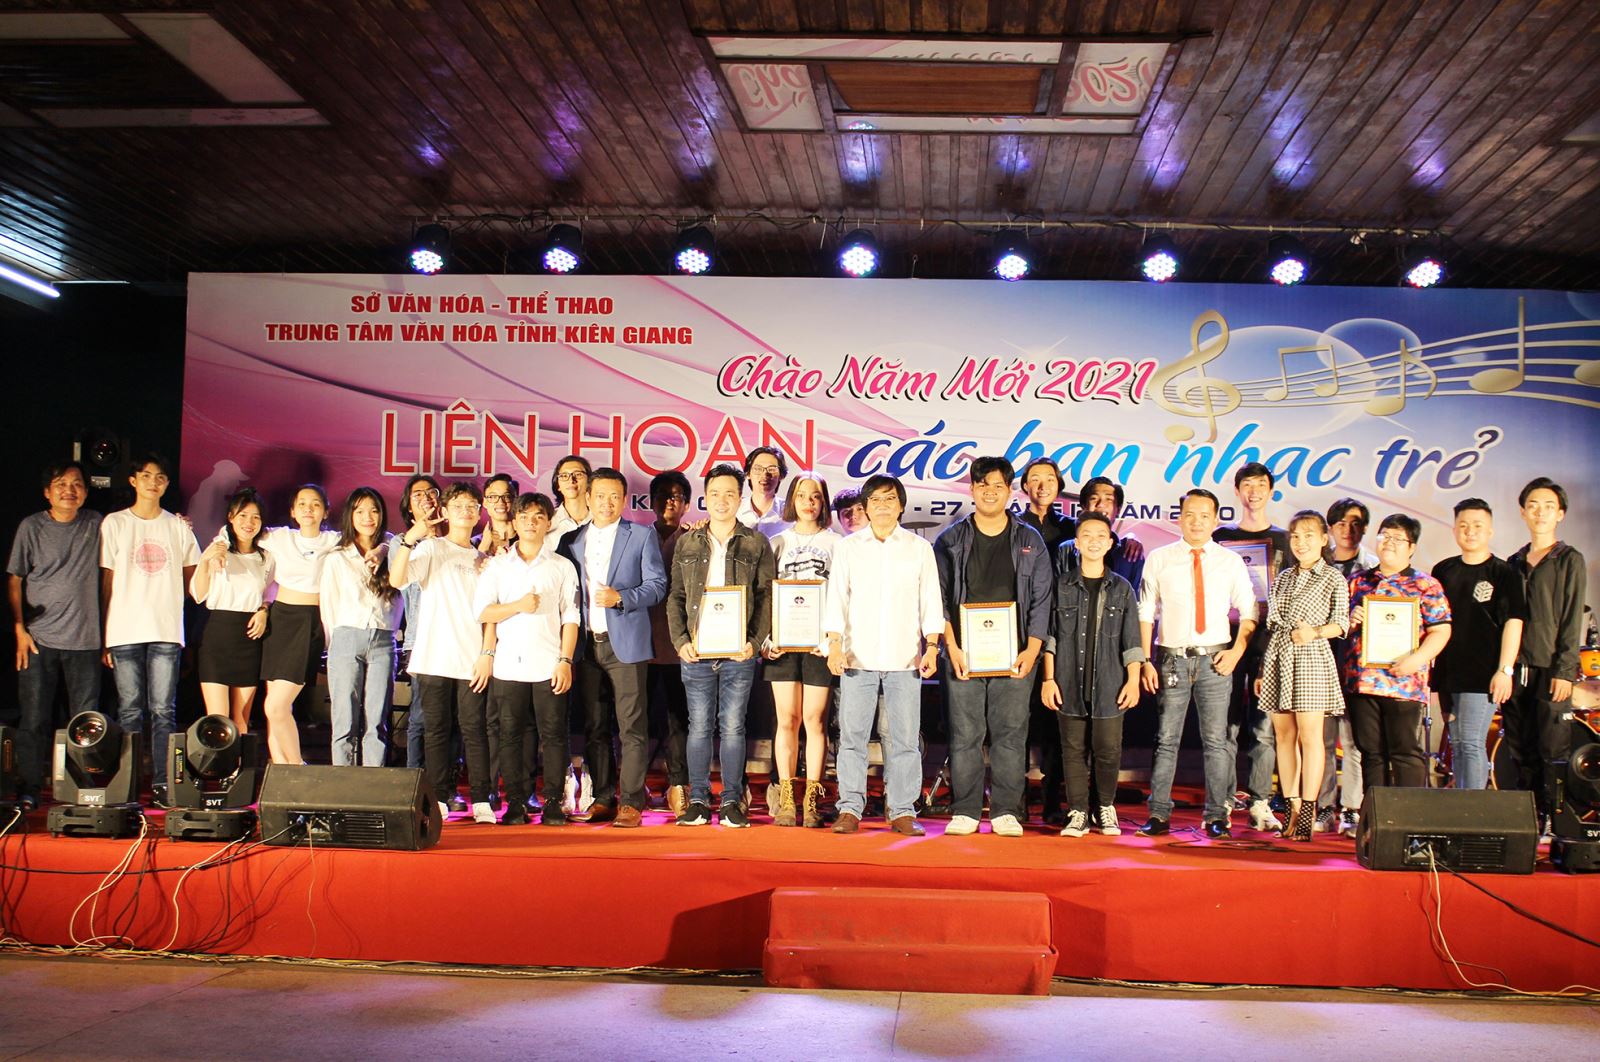 Kiên Giang: Liên hoan các ban nhạc trẻ 